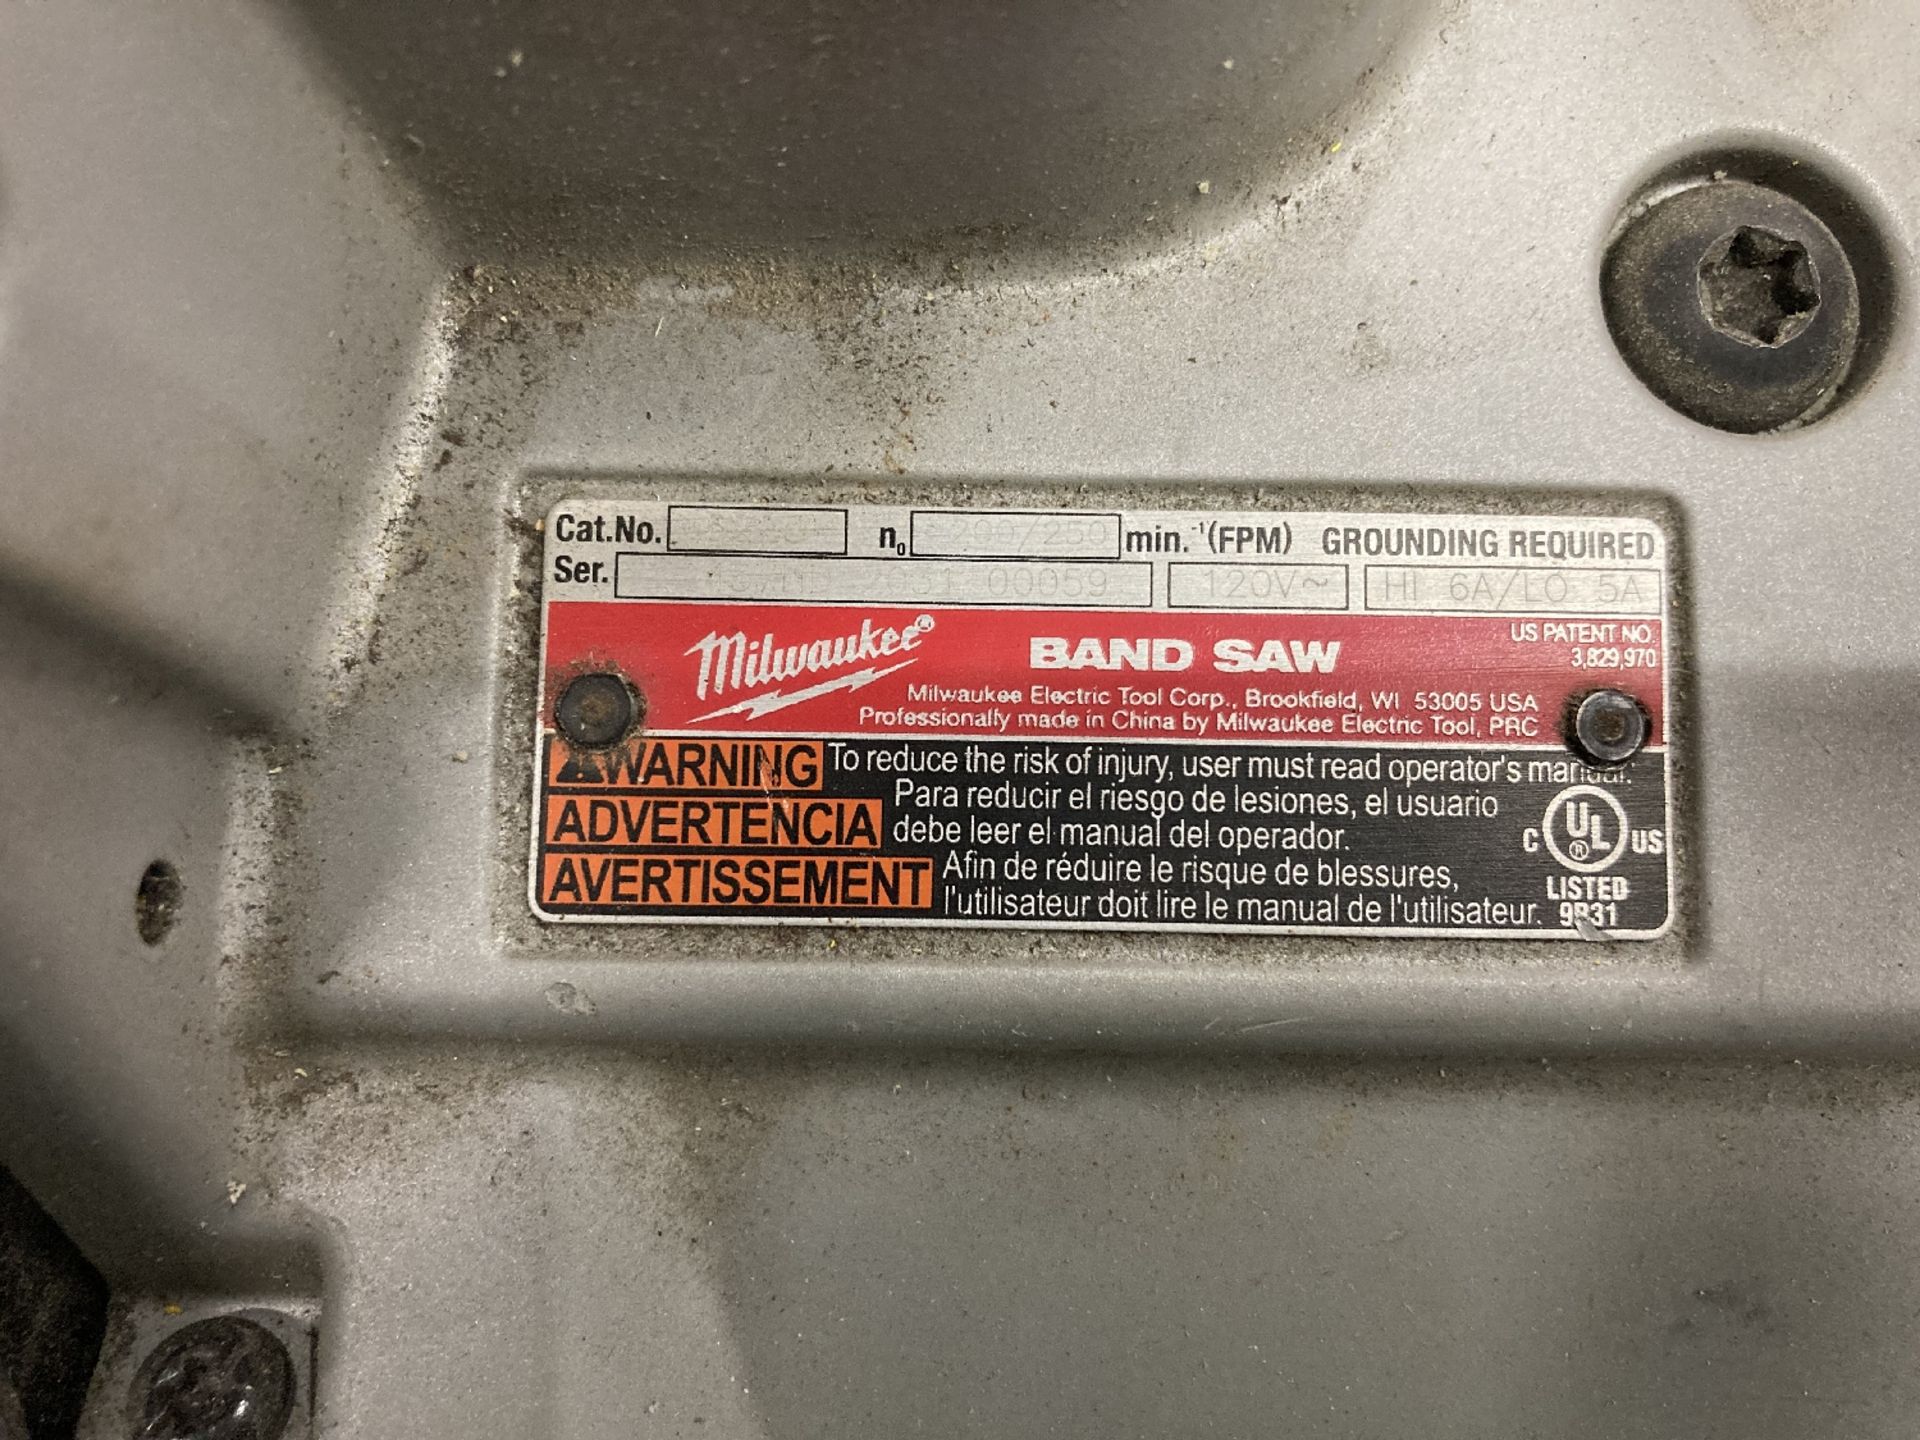 Milwaukee 6225 Portable Bandsaw - Image 2 of 2